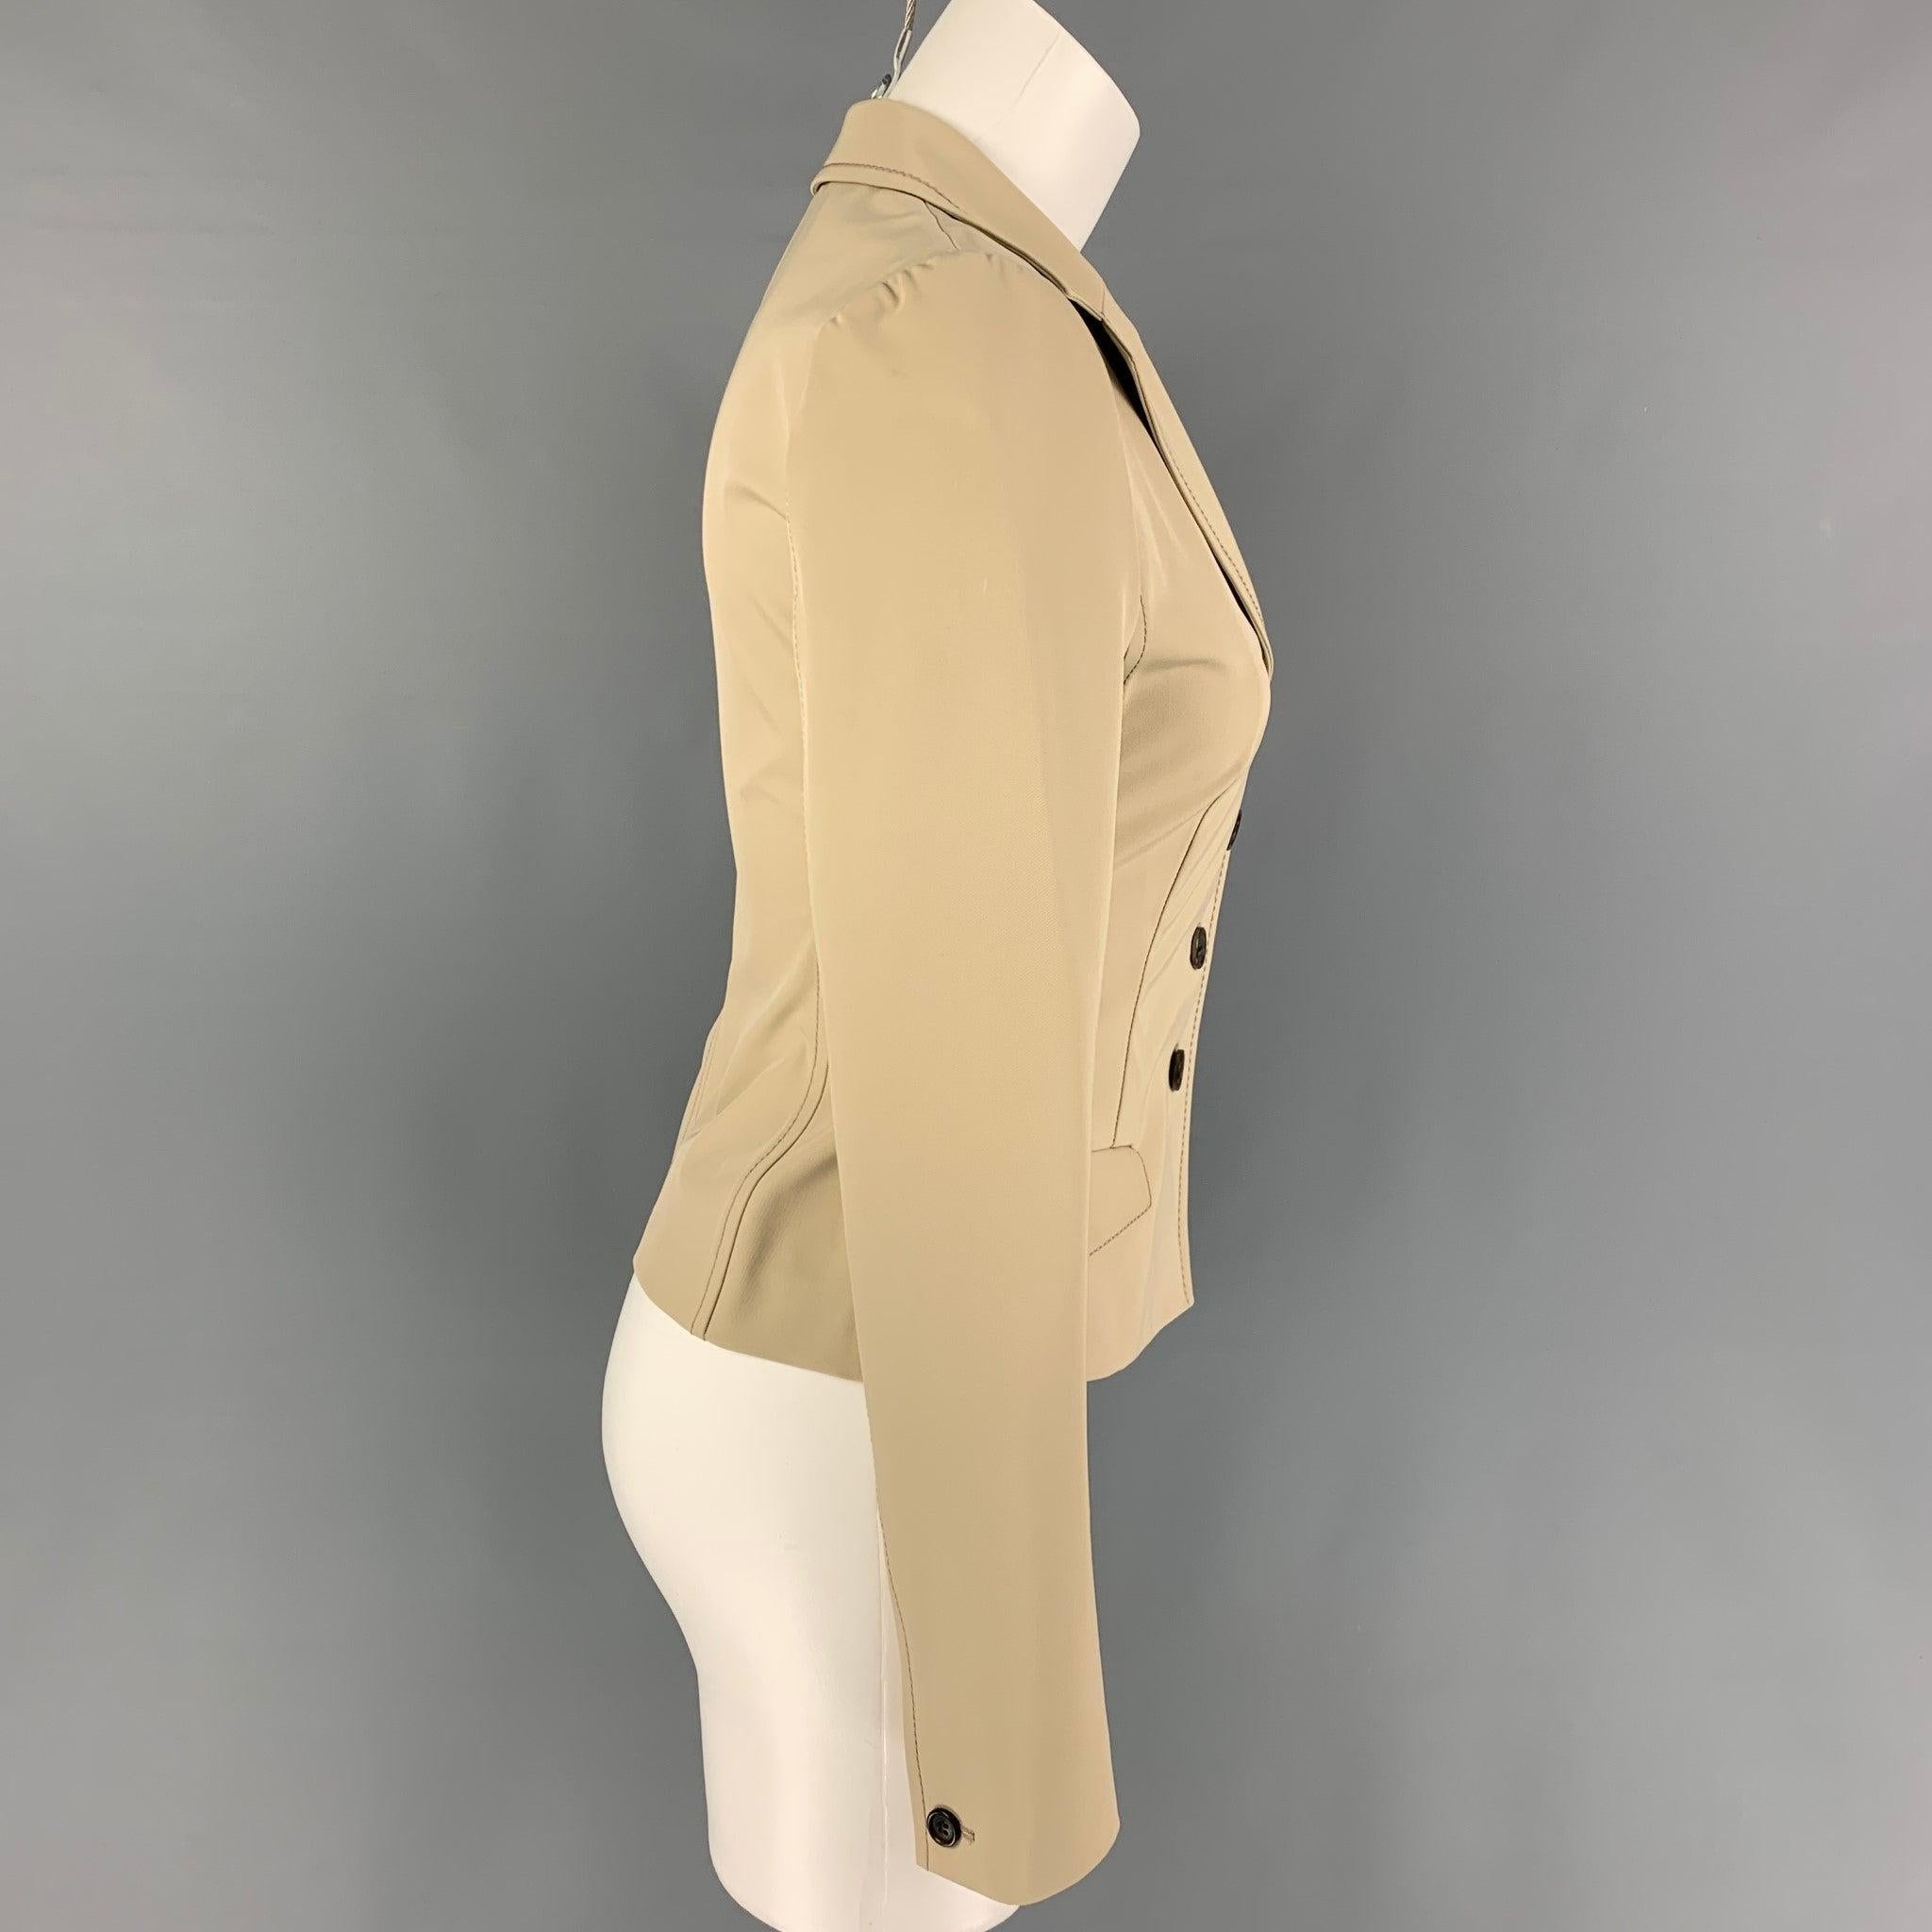 Cette veste PRADA en polyester beige présente un revers à cran, des surpiqûres contrastantes, des poches à rabat et une fermeture boutonnée. Fabriquées en Italie.
Très bien
Etat d'occasion. 

Marqué :   40 

Mesures : 
 
Épaule : 15 pouces  Poitrine